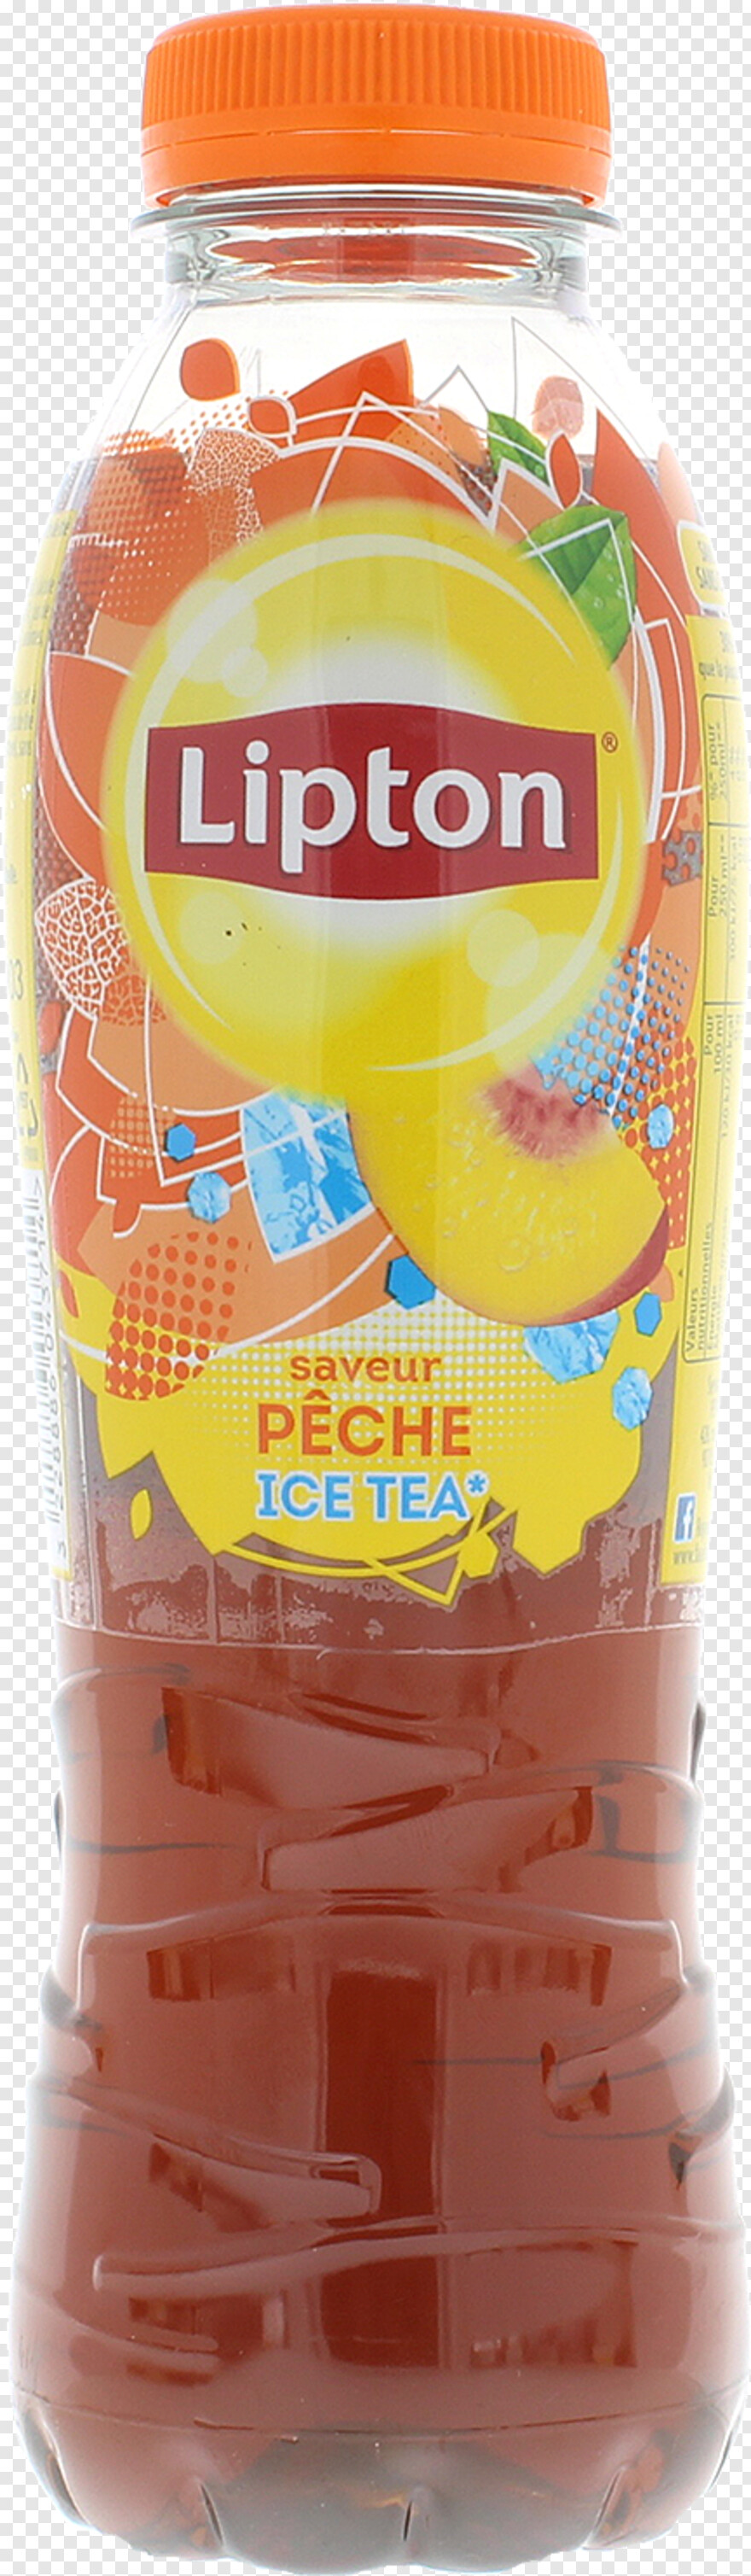 long-island-iced-tea # 752986